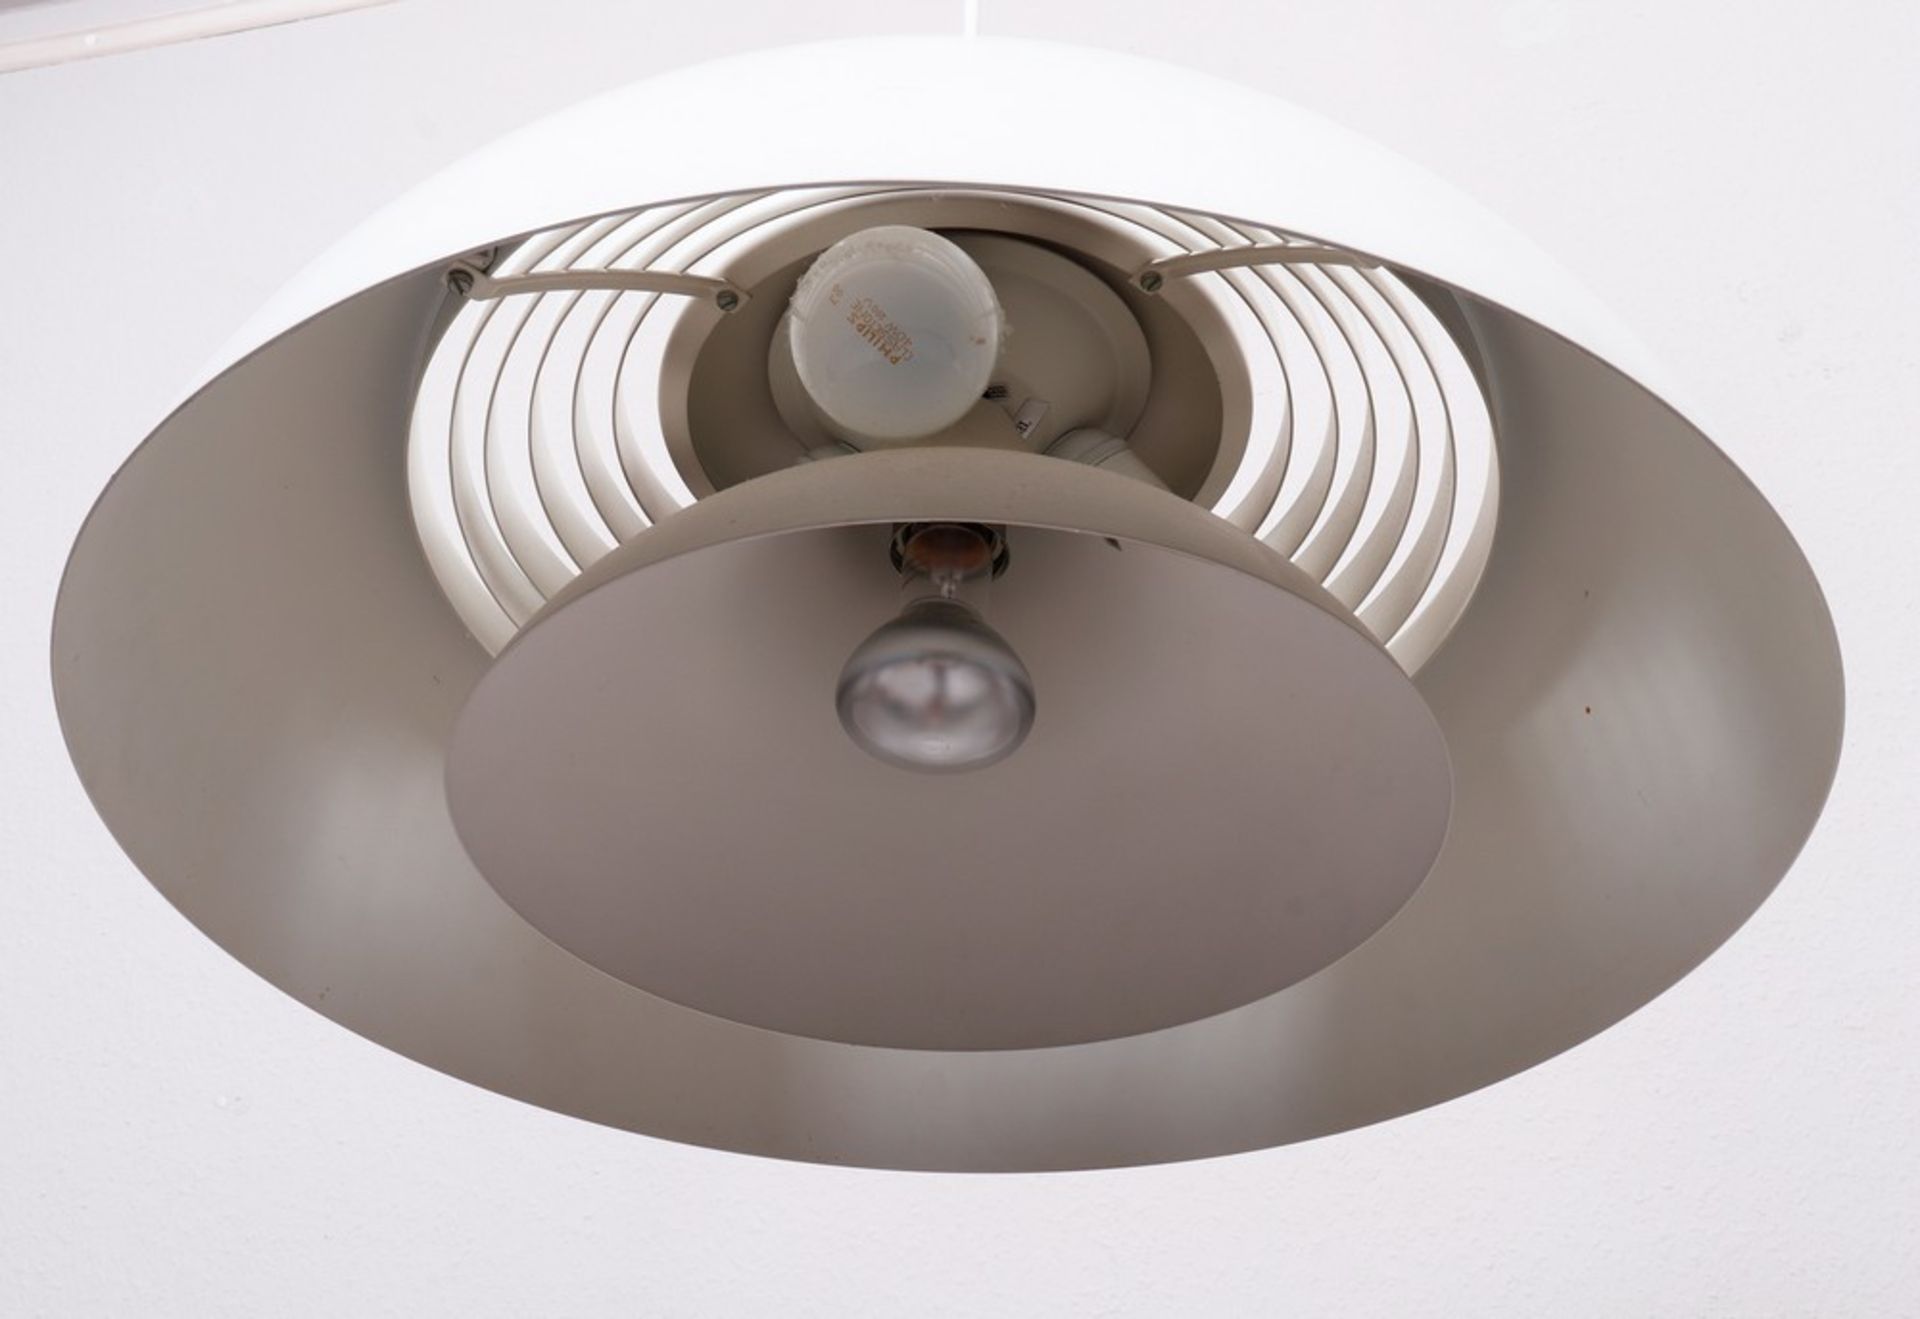 Pendant light design Arne Jacobsen for Louis Poulsen, 20th C. - Image 3 of 3